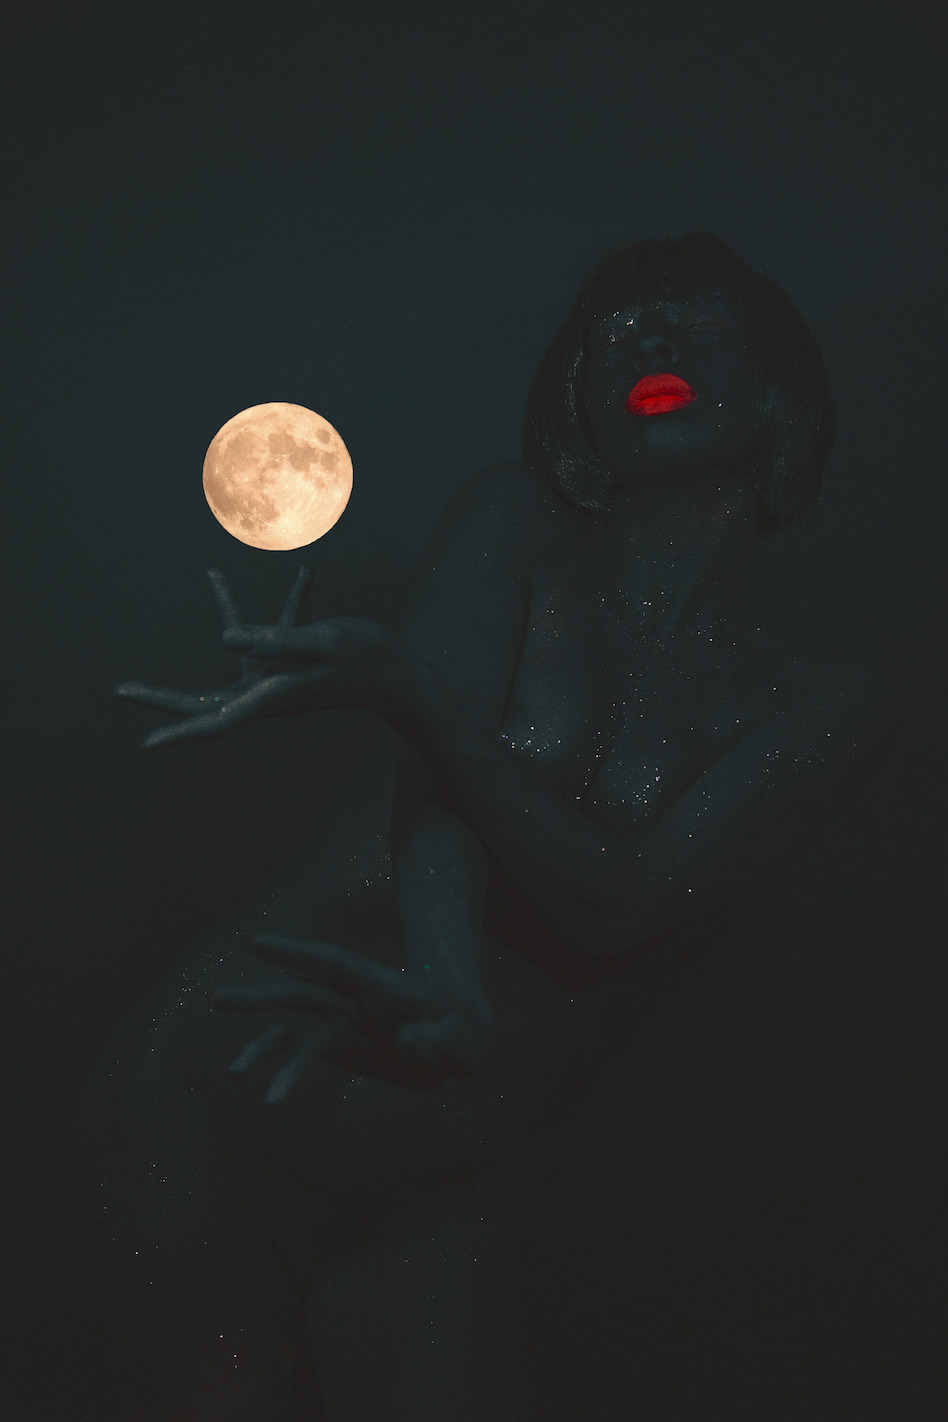  Kia LaBeija  Kia LaBeija Featuring The Moon , 2018 pigment print on Hahnremühle bartya rag paper 45 x 28 in (114.3 x 71.1 cm) 